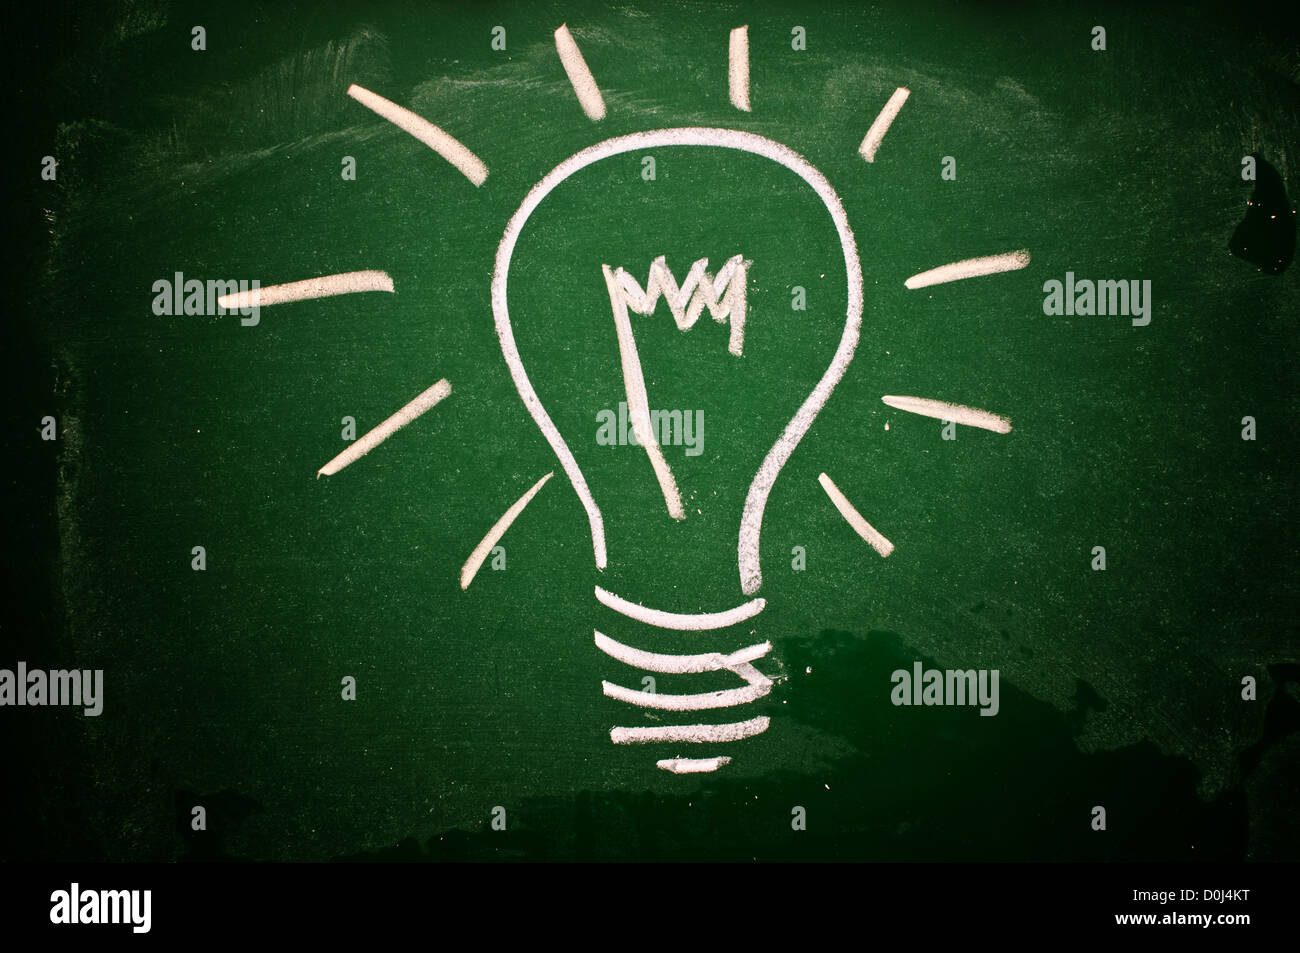 Une ampoule dessiné sur un tableau vert symbolisant des idées, l'inspiration et de la créativité Banque D'Images